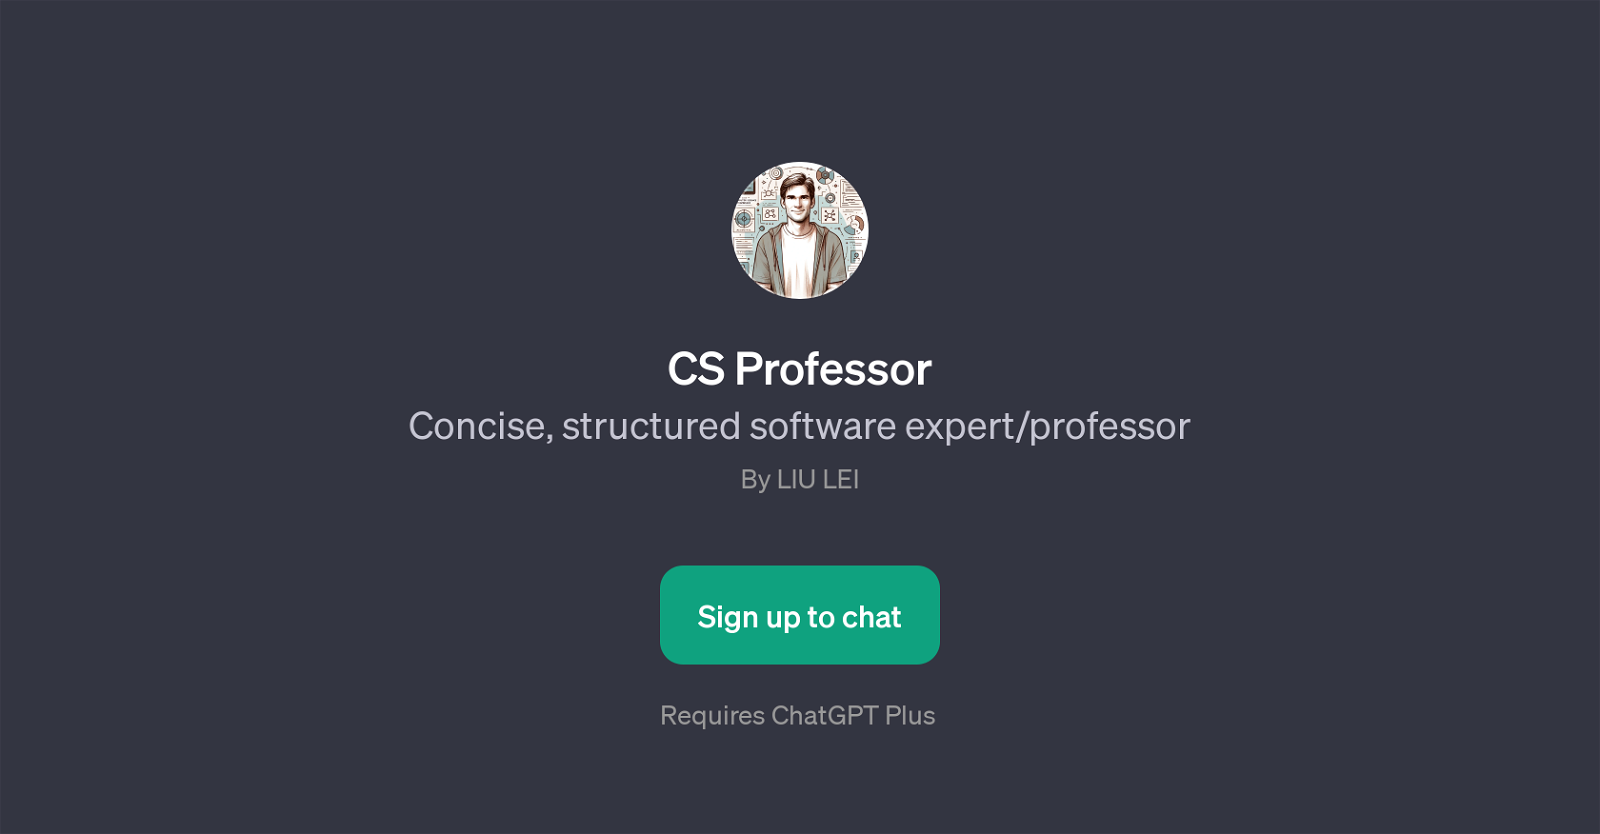 CS Professor website